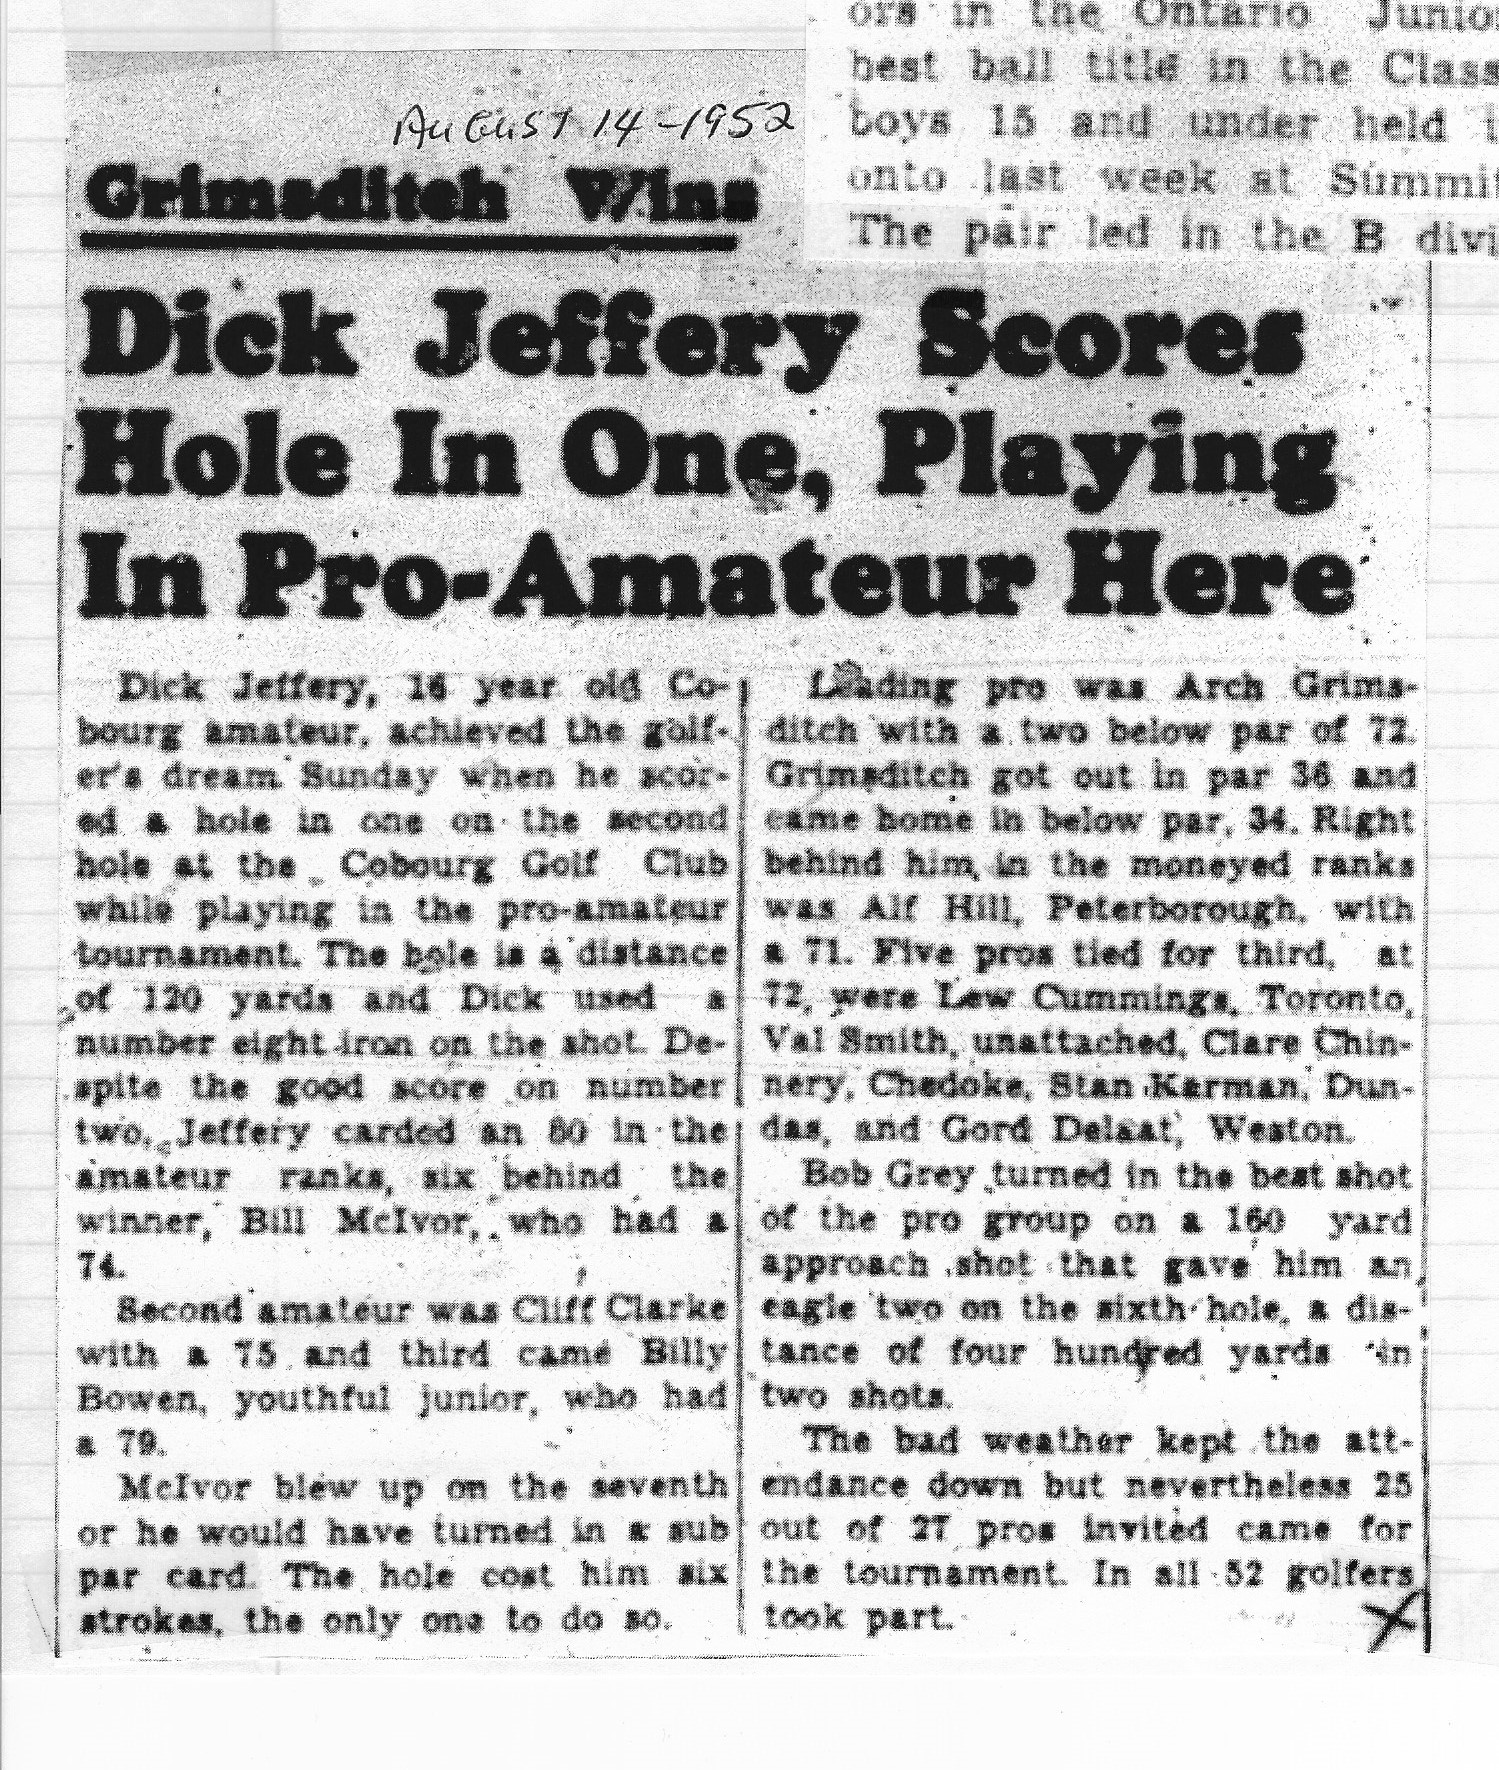 1952-08-14 Golf -Dick Jeffery  Hole in one